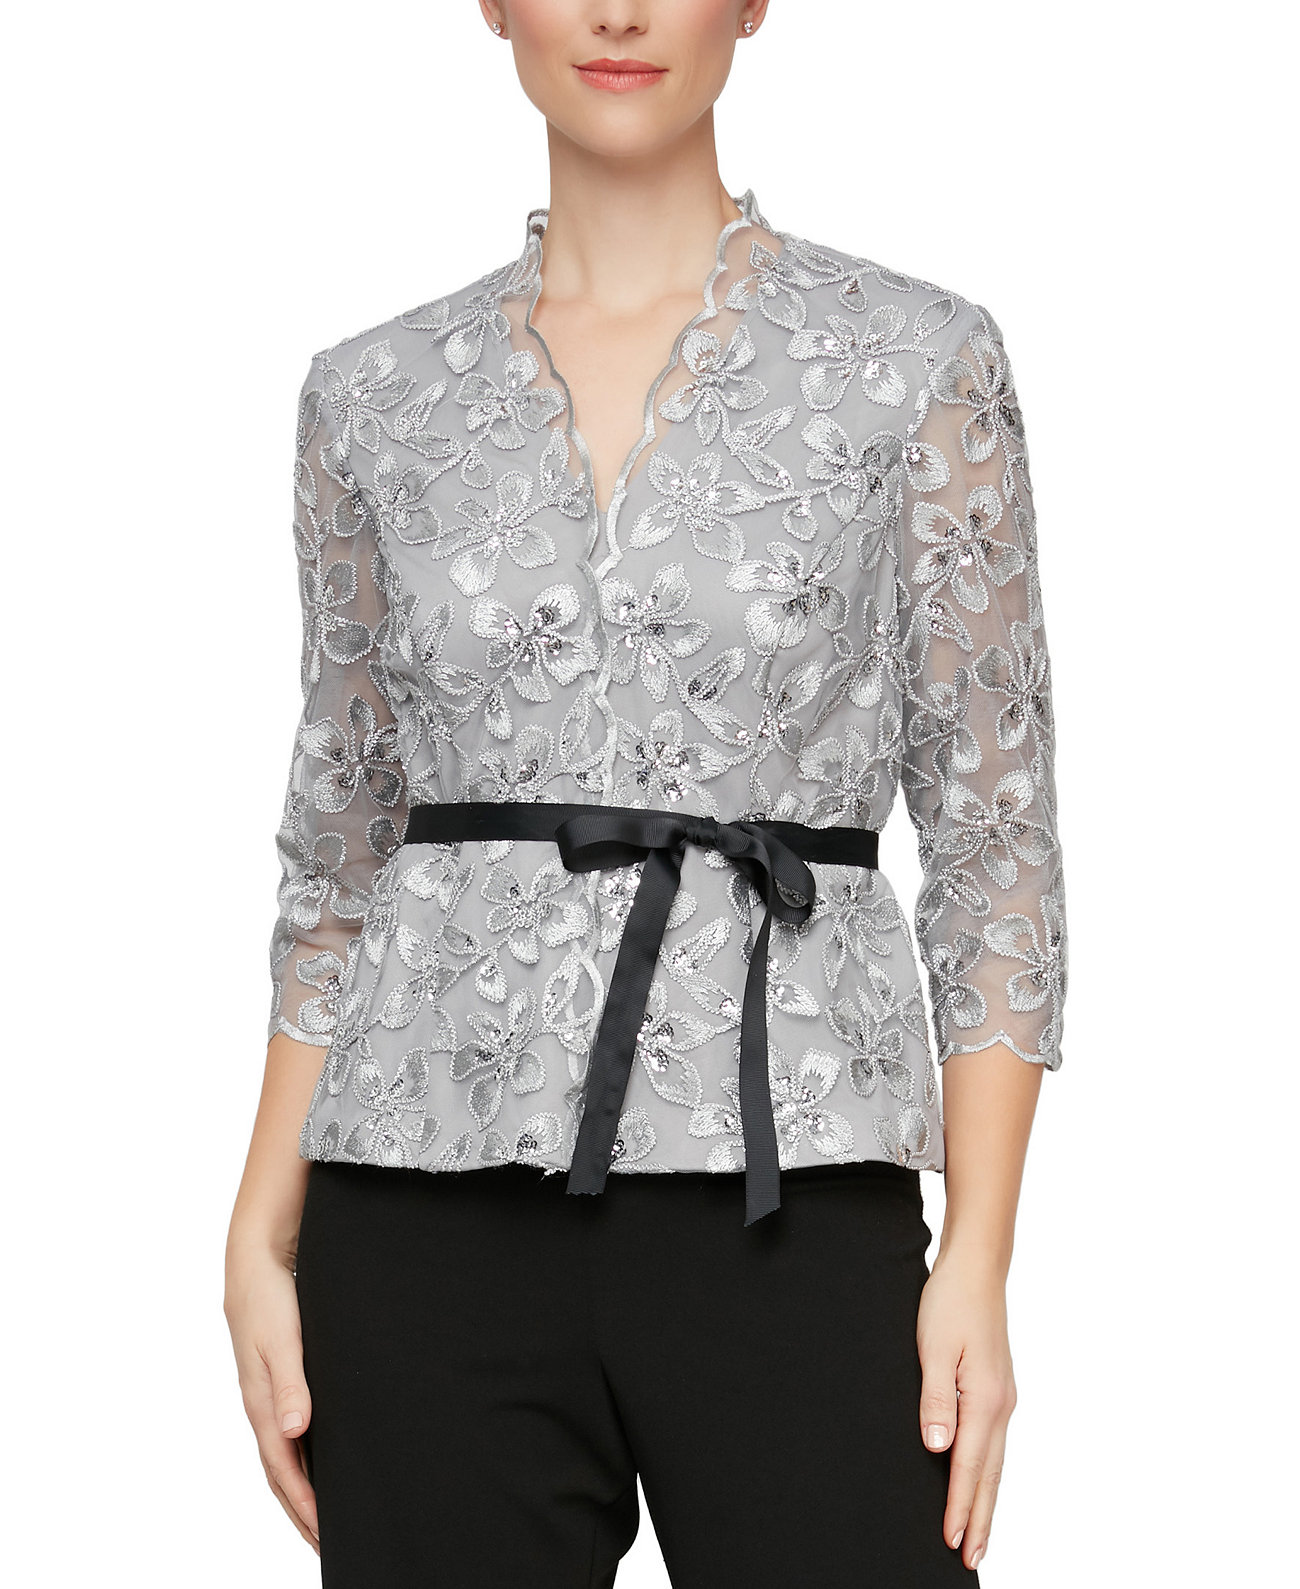 Миниатюрная блузка с кружевной отделкой Alex Evenings